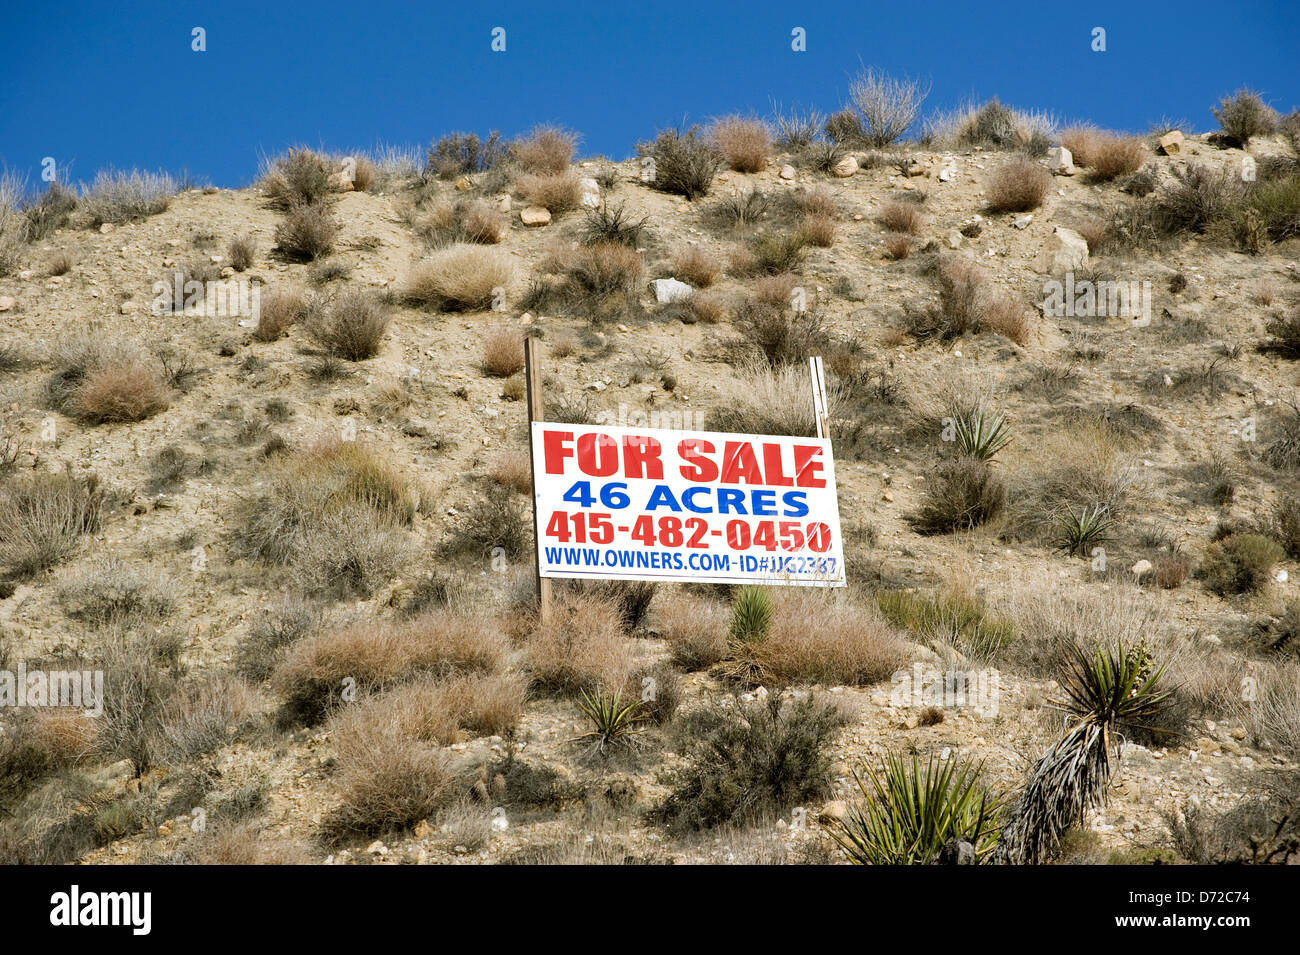 Terrain à vendre sign in desert Banque D'Images